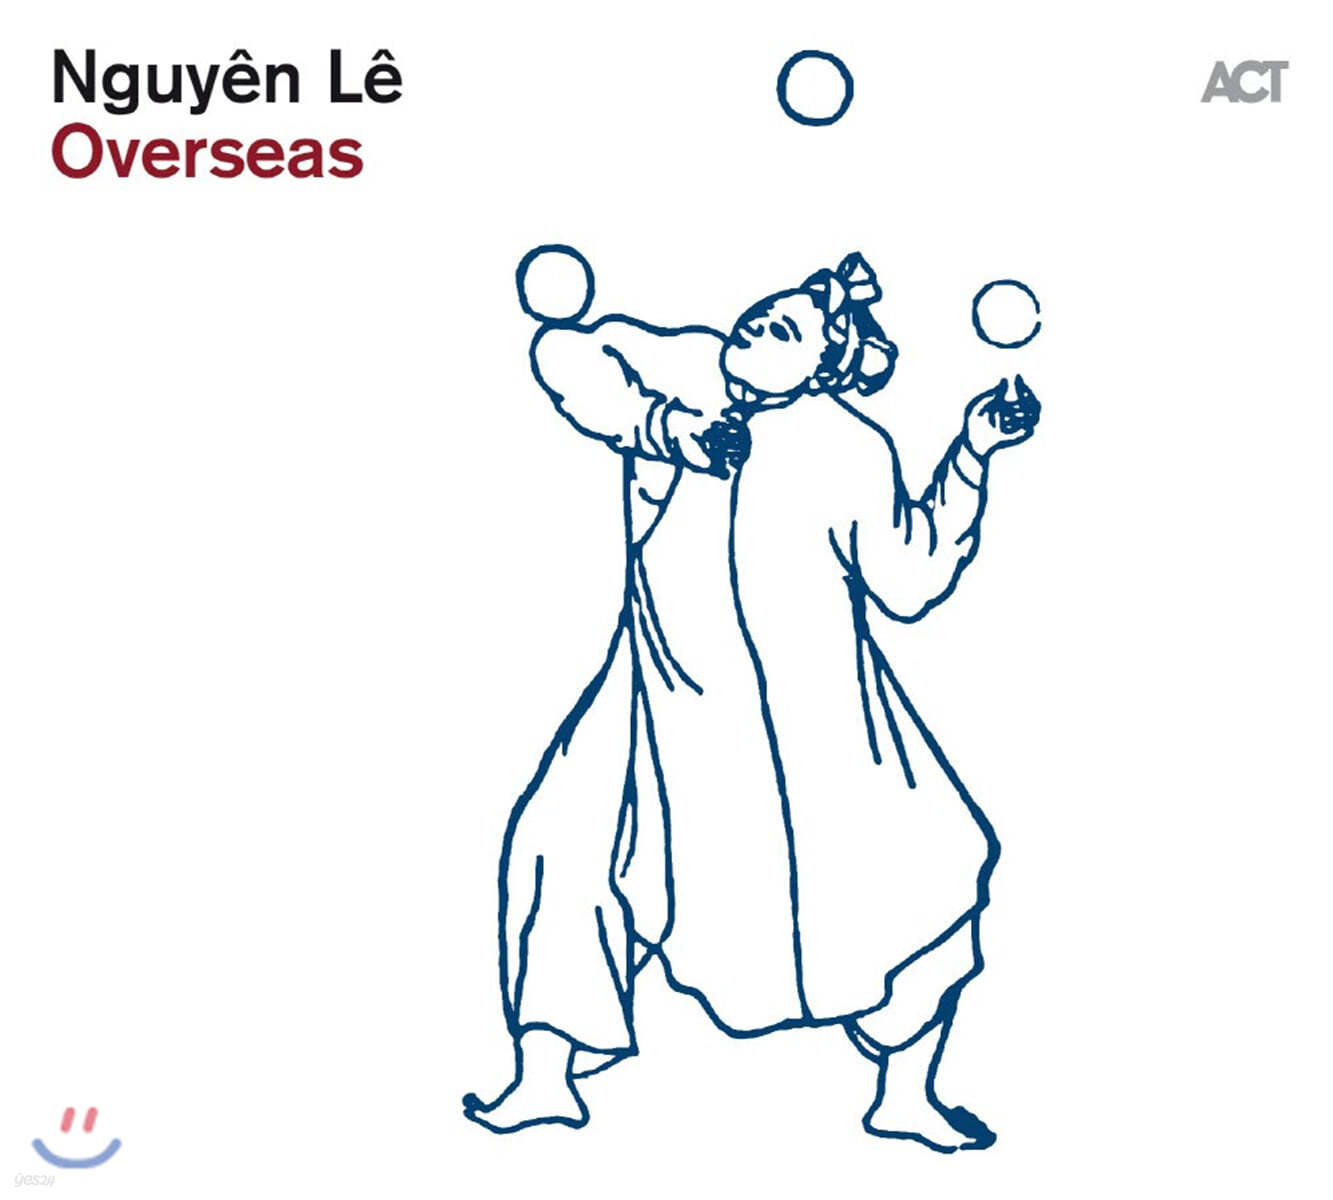 Nguyen Le (누엔 레) - Overseas